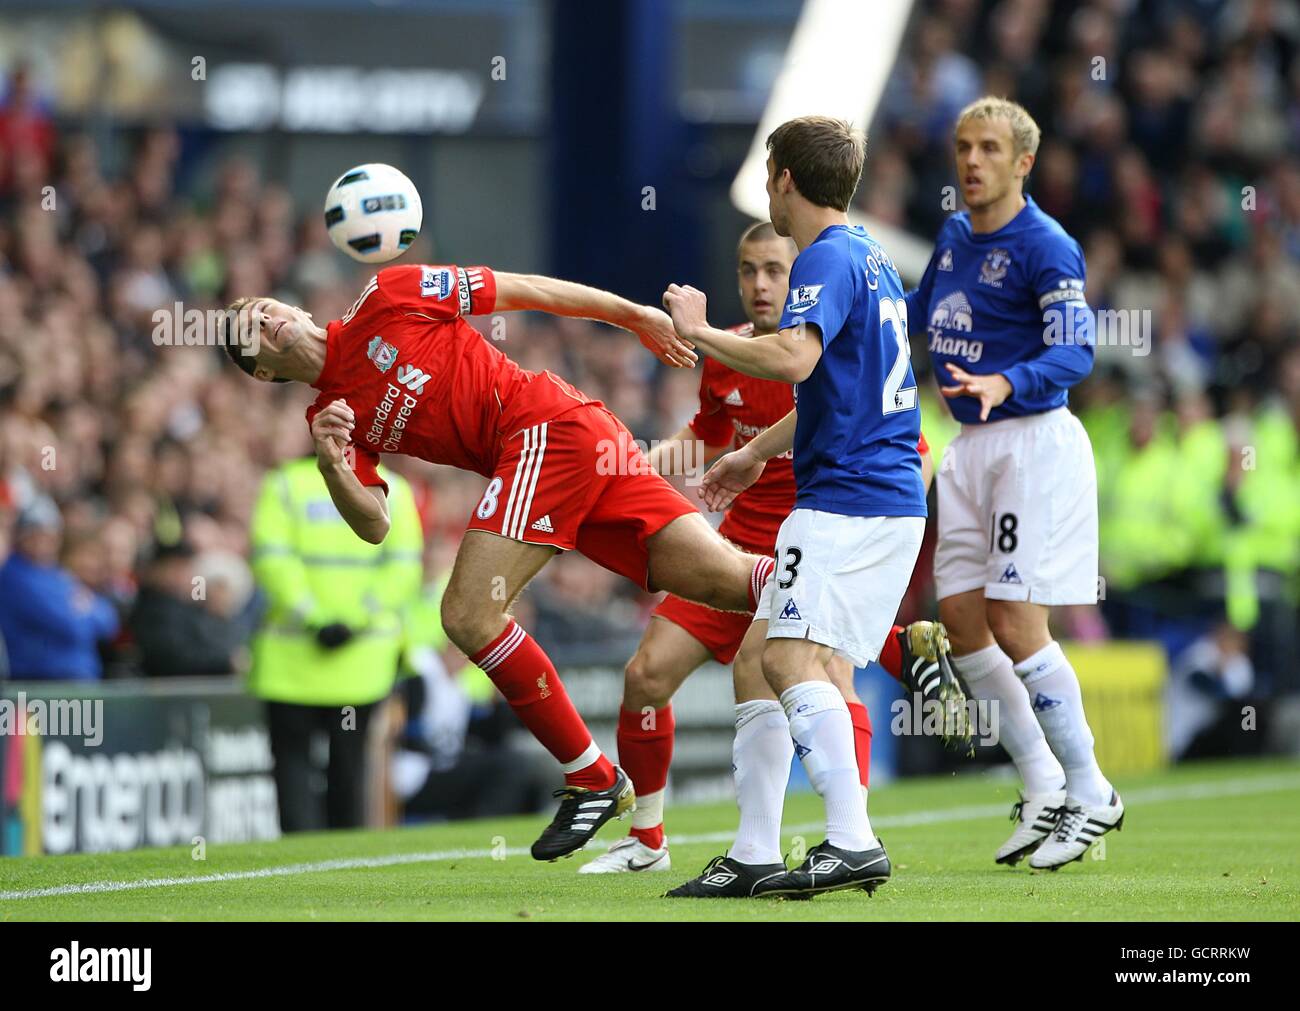 Fútbol - Barclays Premier League - Everton v Liverpool - Goodison Park. Steven Gerrard de Liverpool (izquierda) en acción Foto de stock